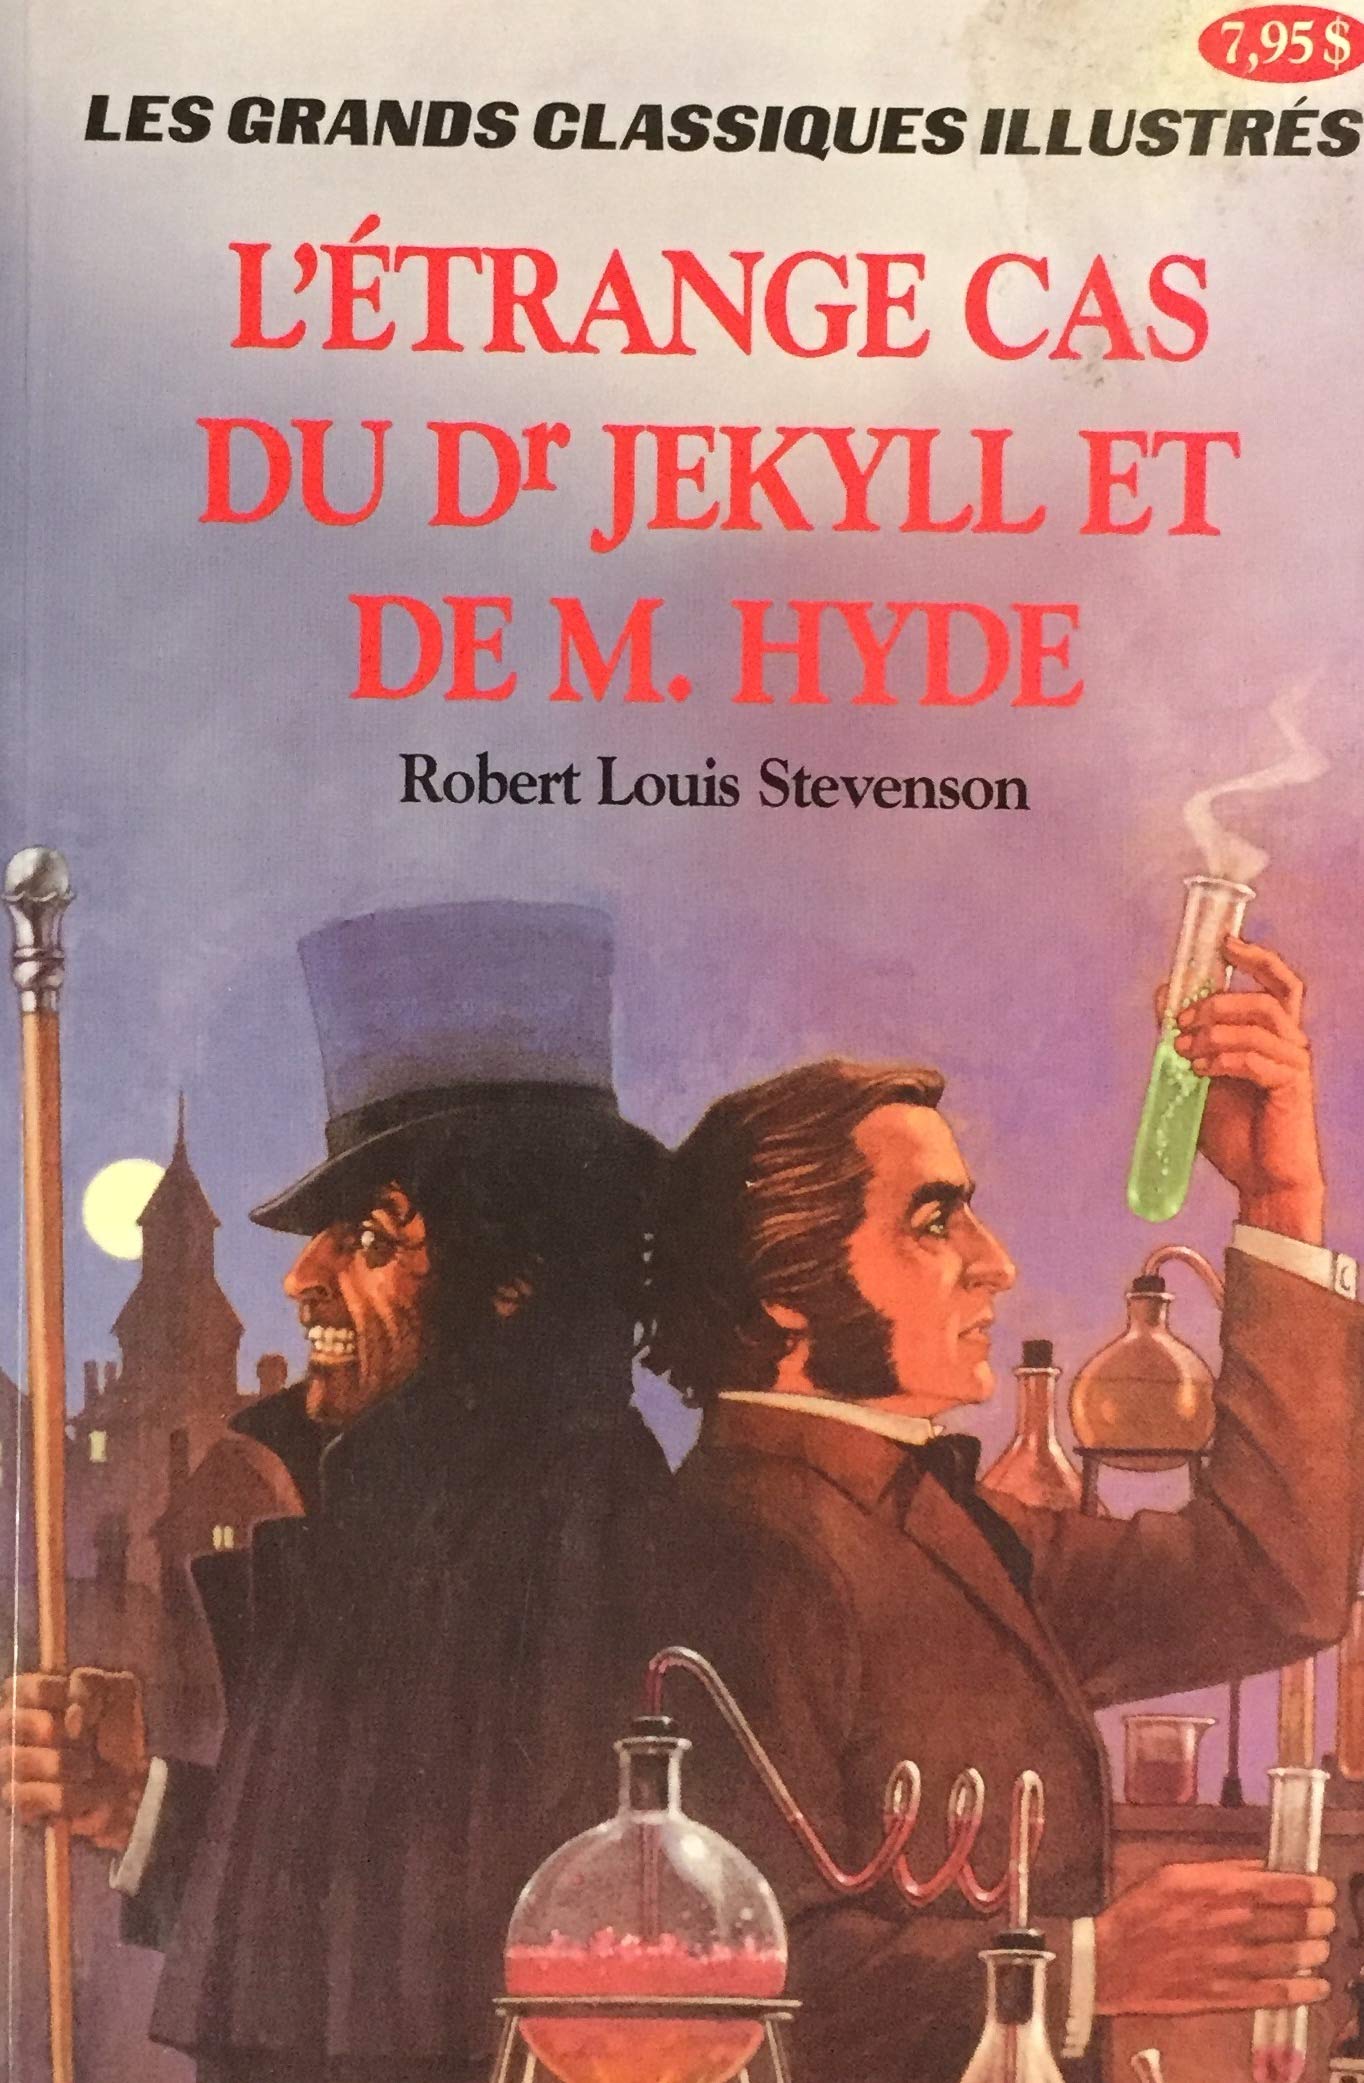 Les grands classiques illustrés : L'étrange cas du Dr Jekyll et de M. Hyde - Robert Louis Stevenson